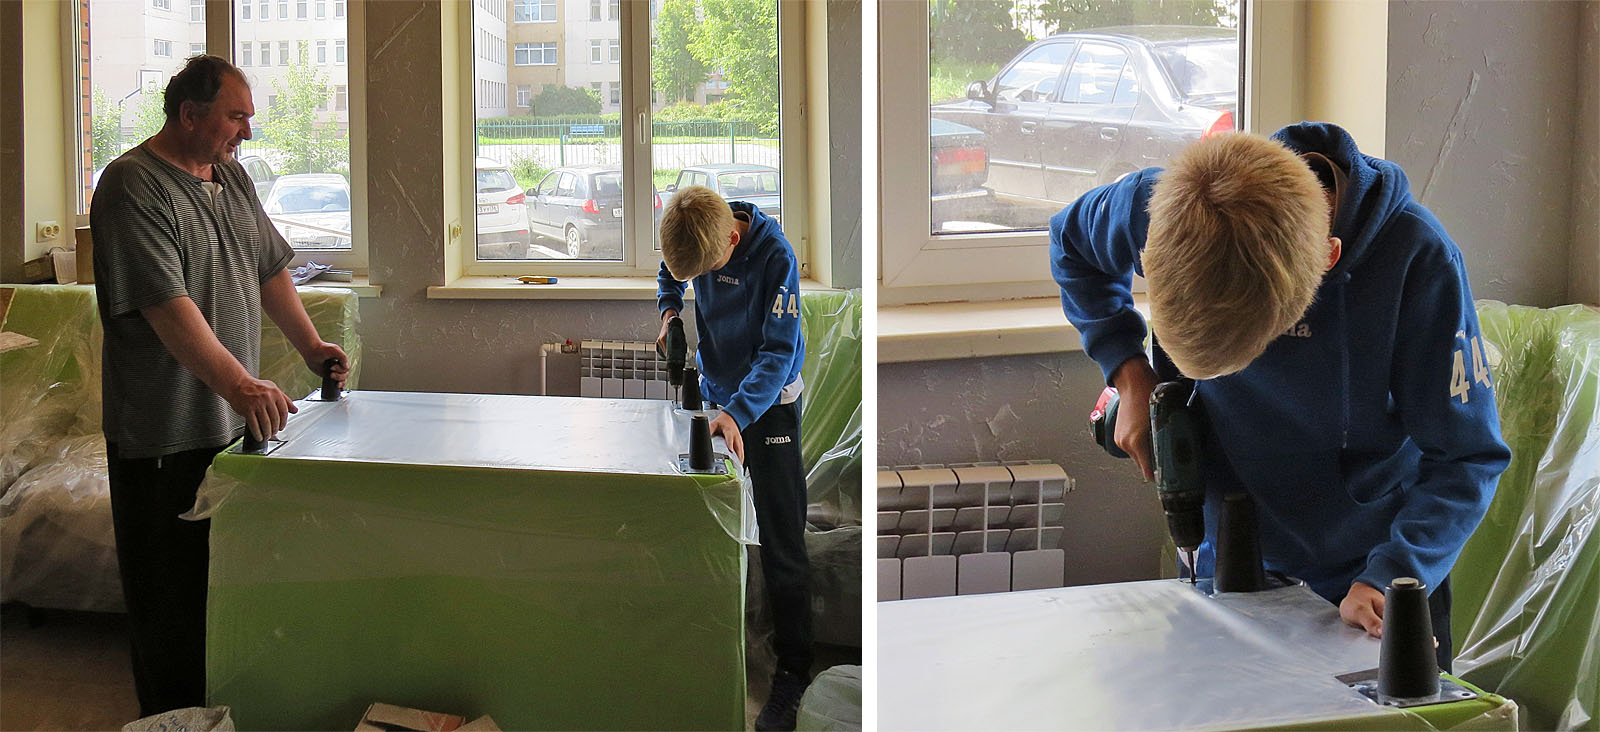 Александр с сыном активно помогают со сборкой мебели.